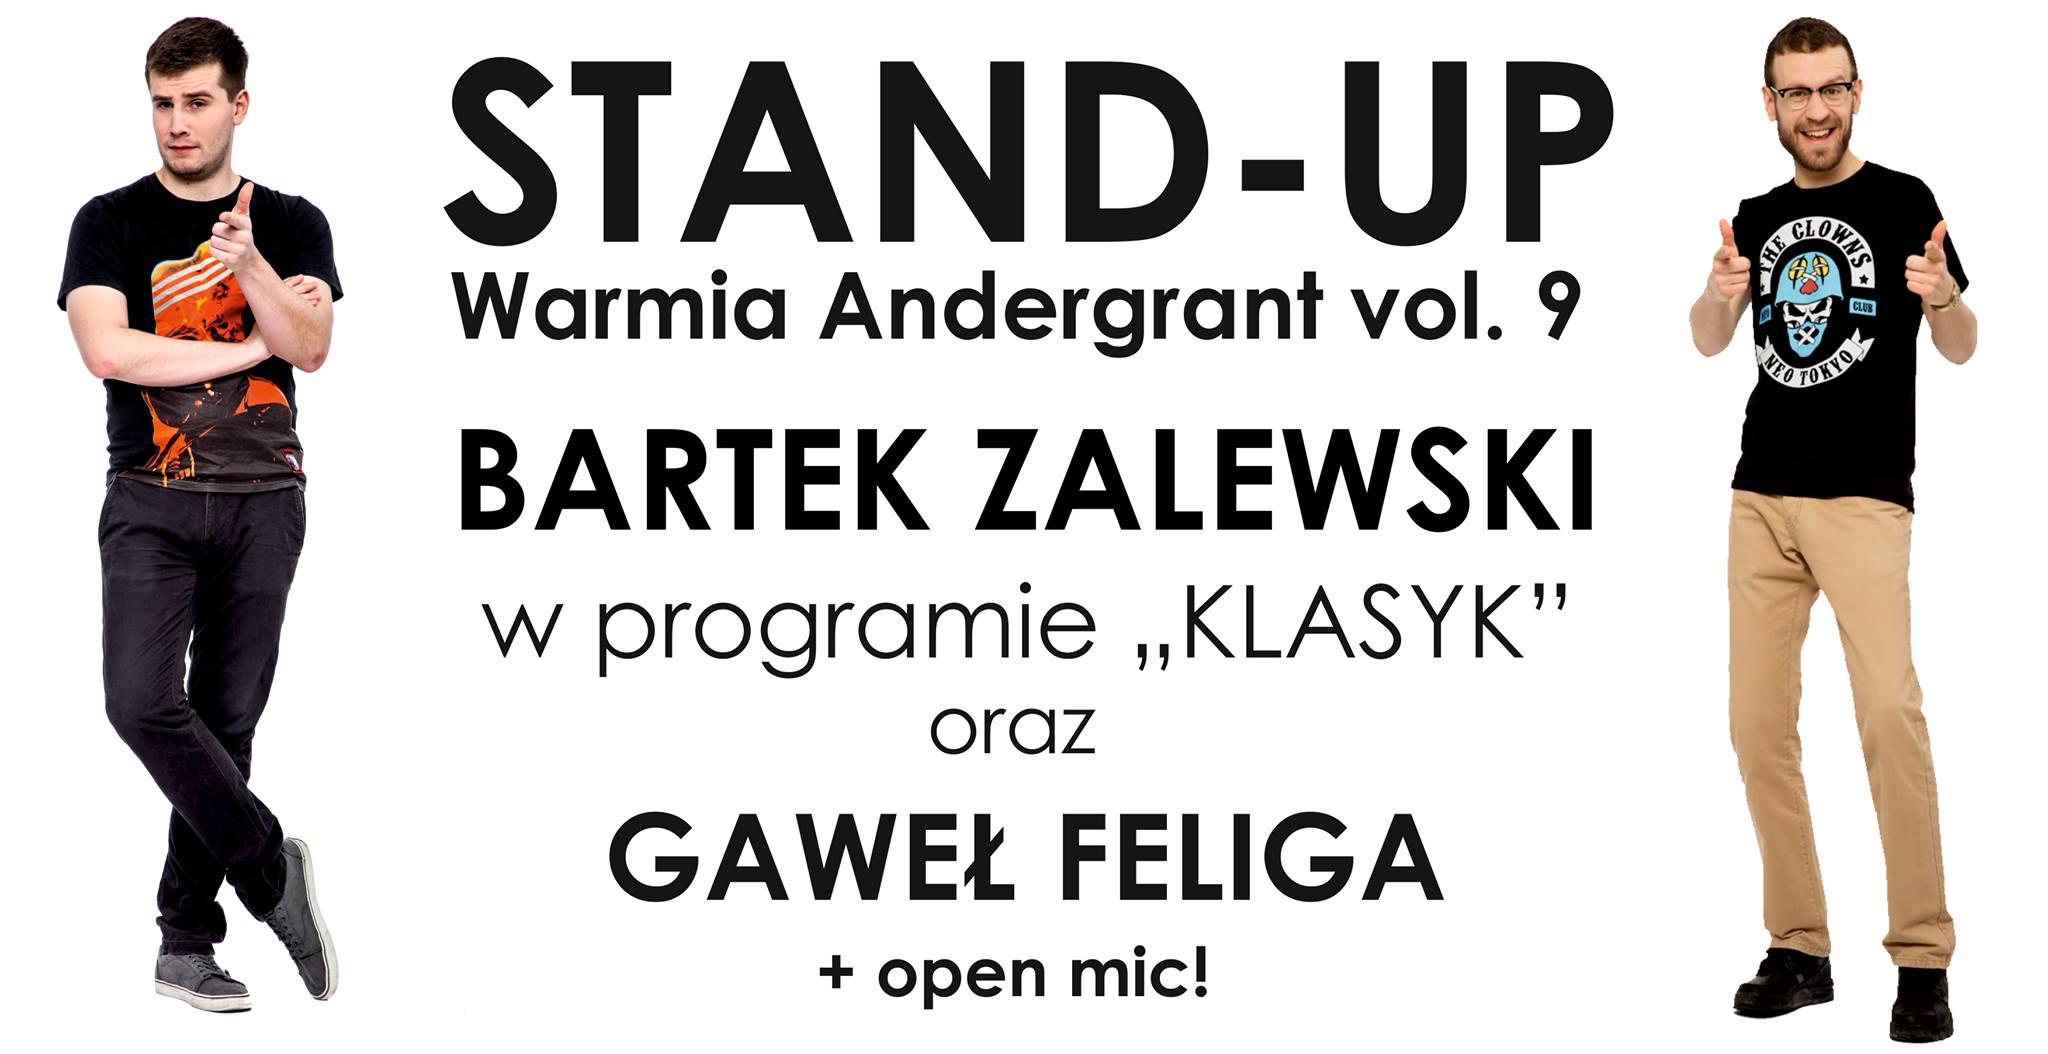 Stand-up Warmia Andergrant w 9. odsłonie